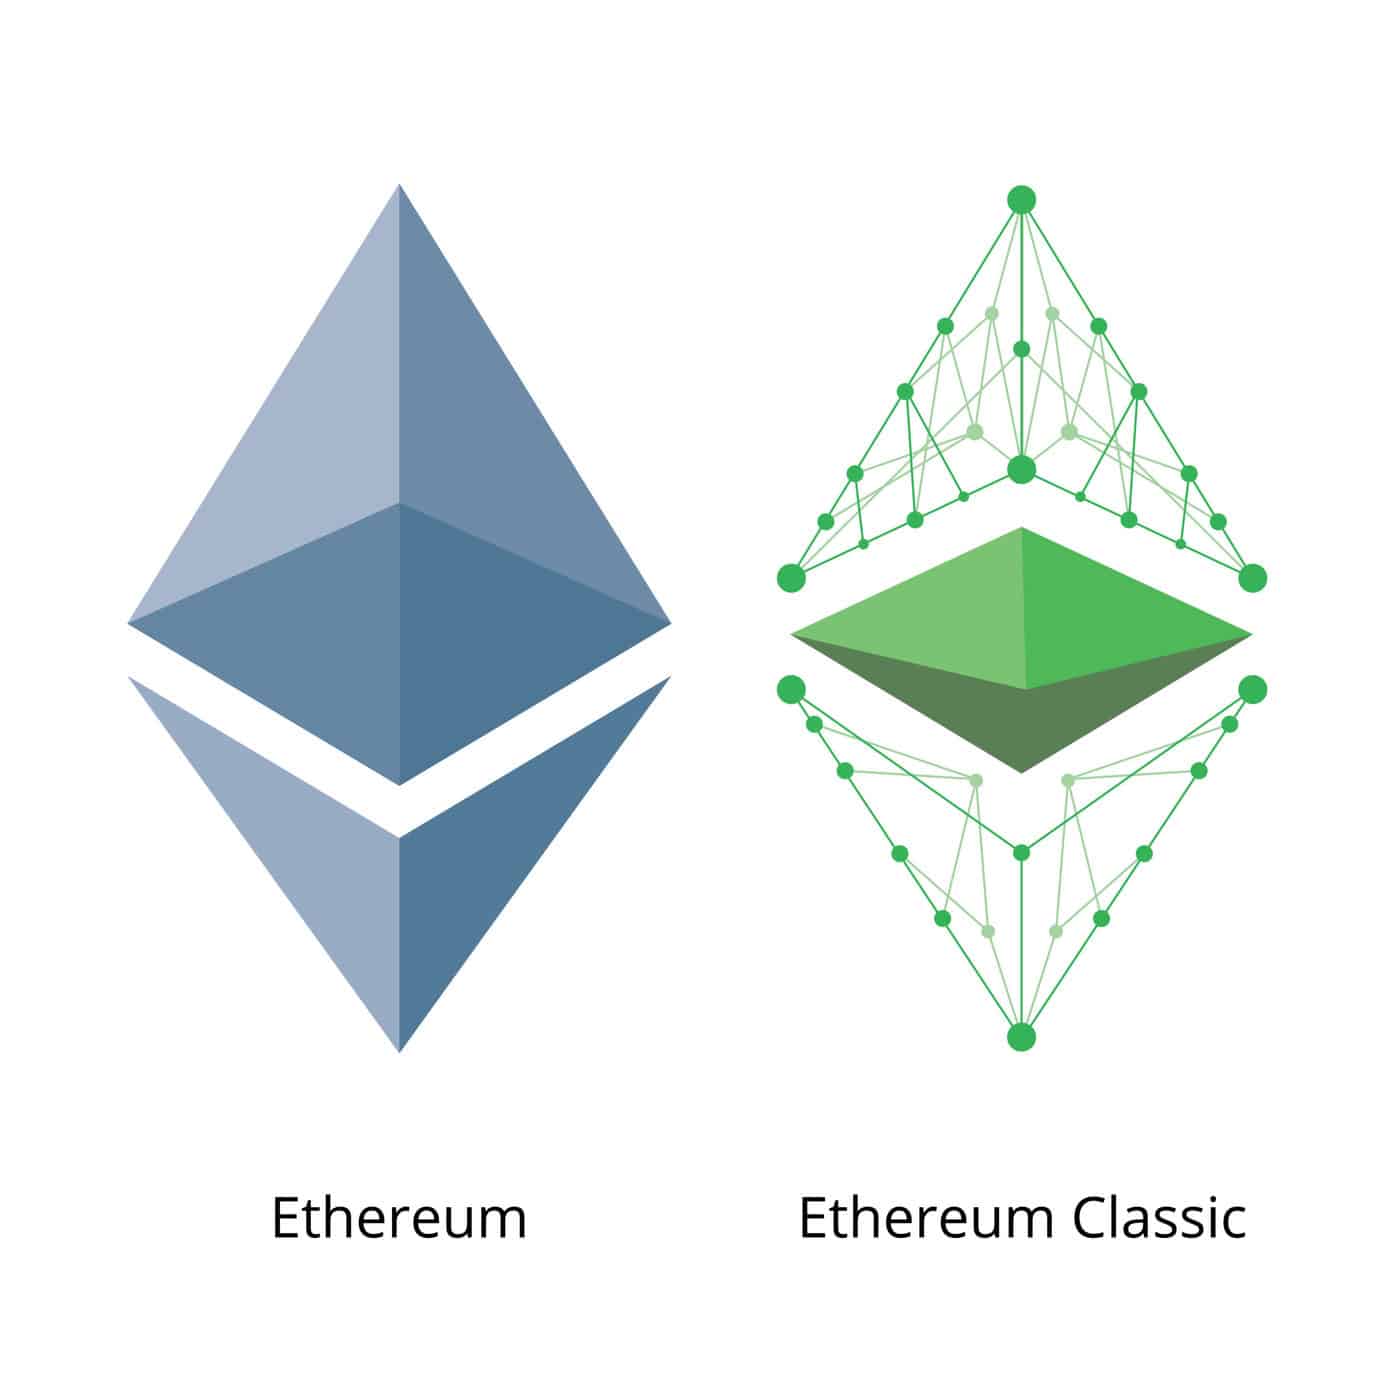 Ethereum and Ethereum Classic